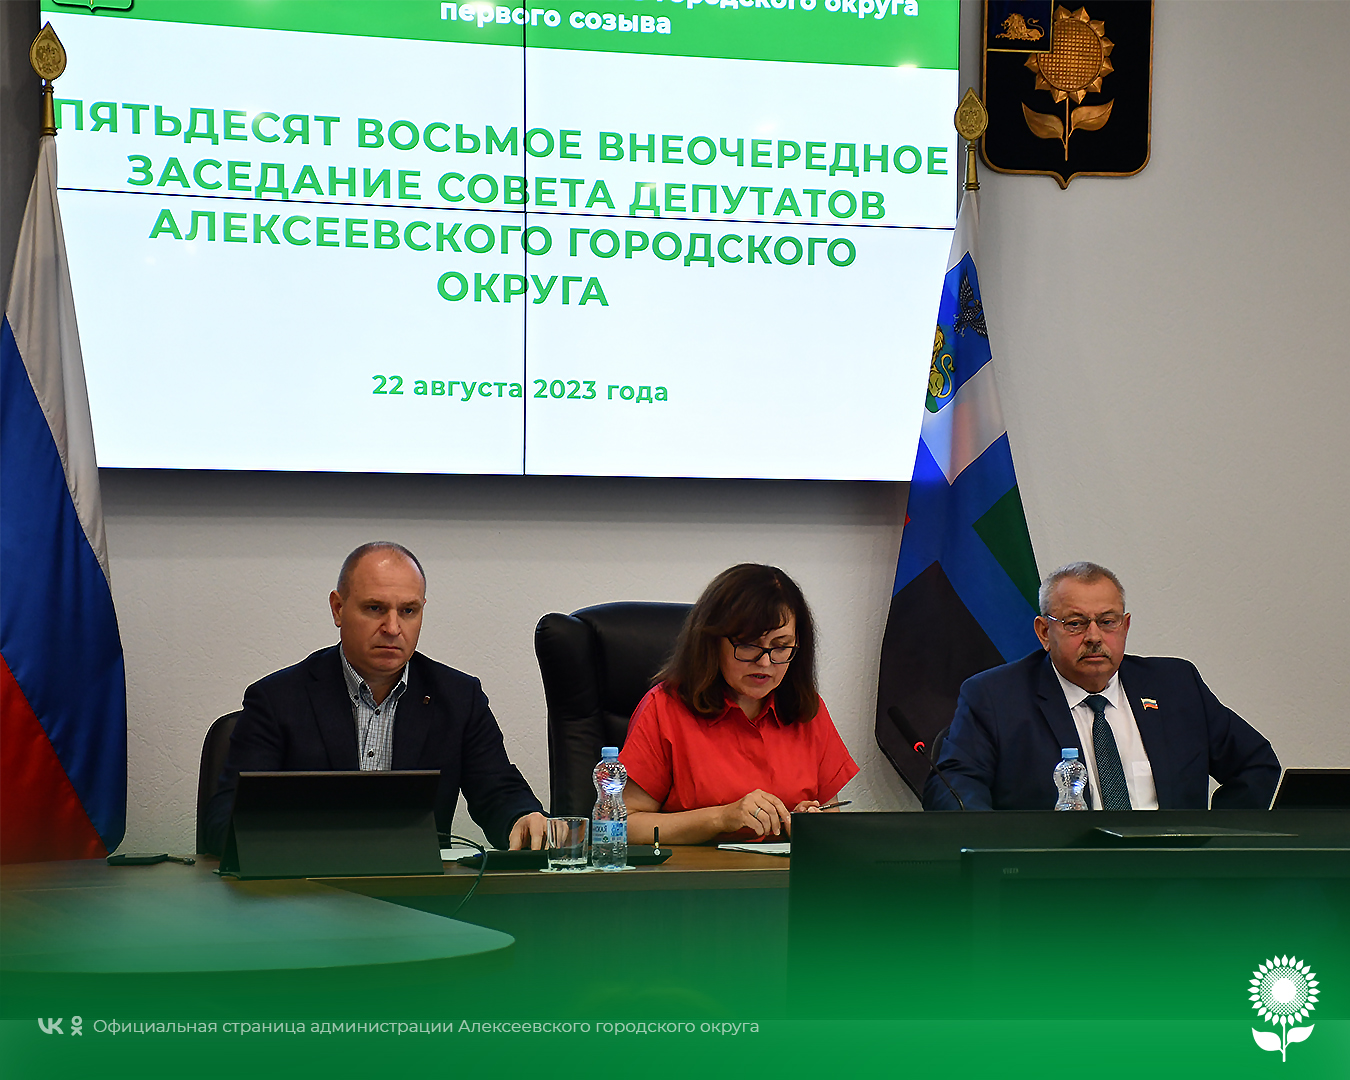 В Алексеевке состоялось пятьдесят восьмое внеочередное заседание Совета депутатов.